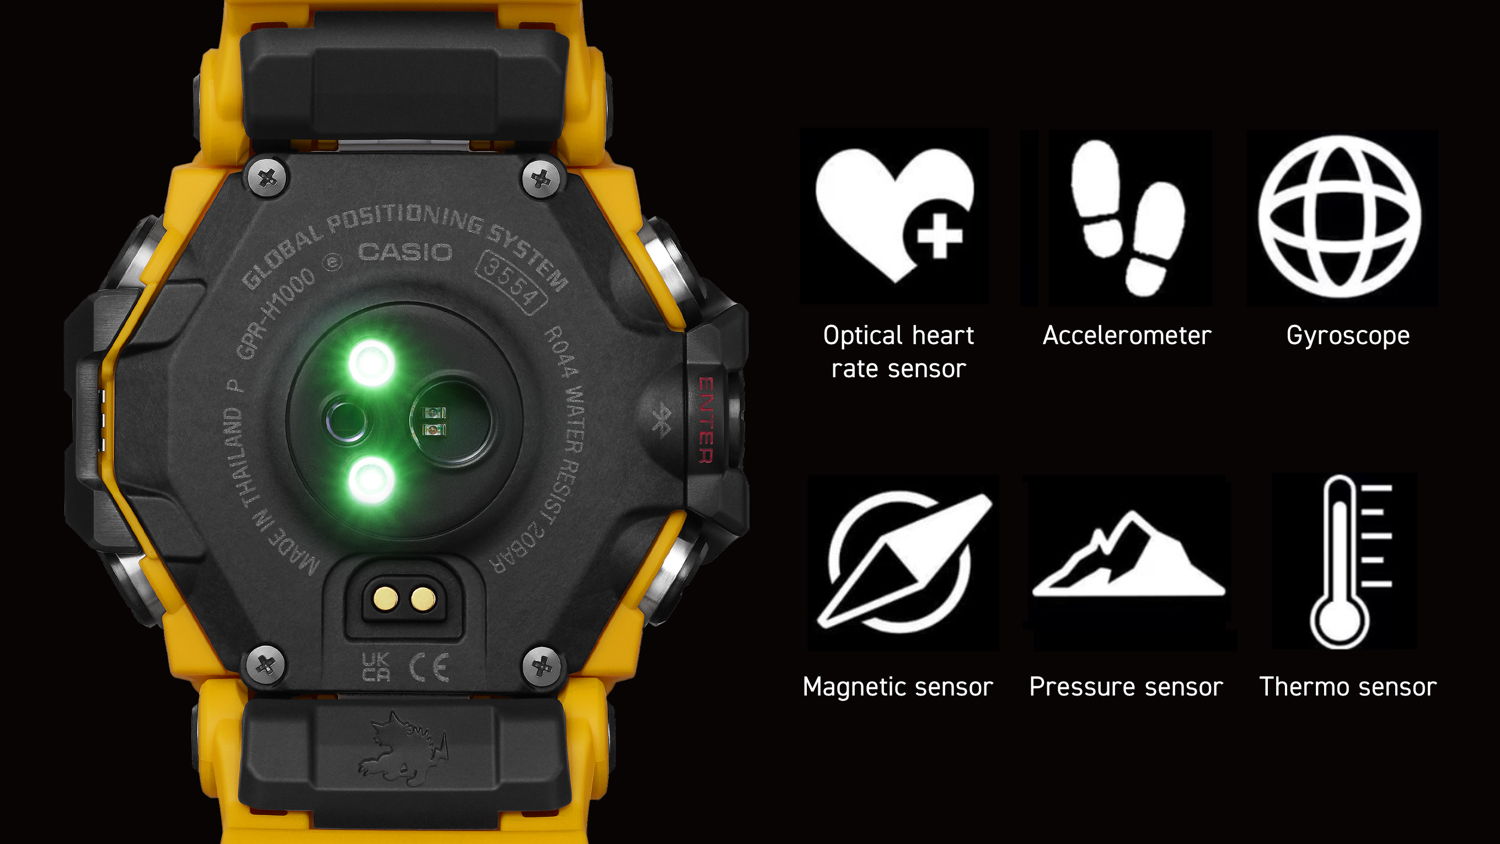  Seis sensores y funcionalidad de GPS para rastrear el movimiento en tiempo real.